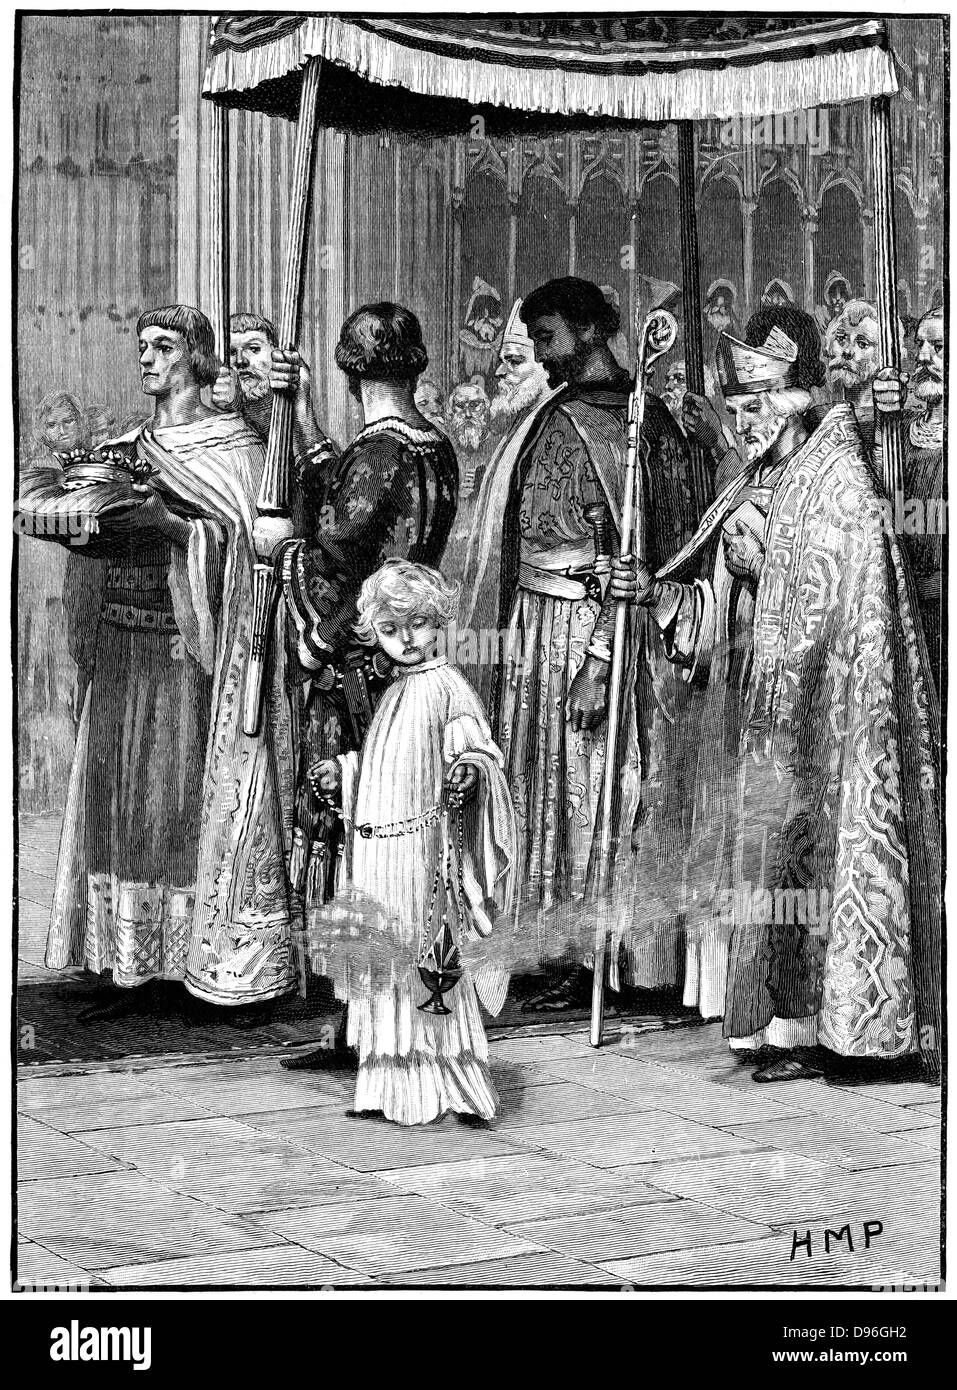 Krönung von Richard ich in der Westminster Abbey 1189. Richard Verarbeitung den Gang hinunter. Der Sohn Heinrich II. und Eleonore von Aquitanien, regierte als König von England (1189-1199). Die zweite der Anjou (Plantagenet) Könige von England. Holzstich c 1880. Stockfoto